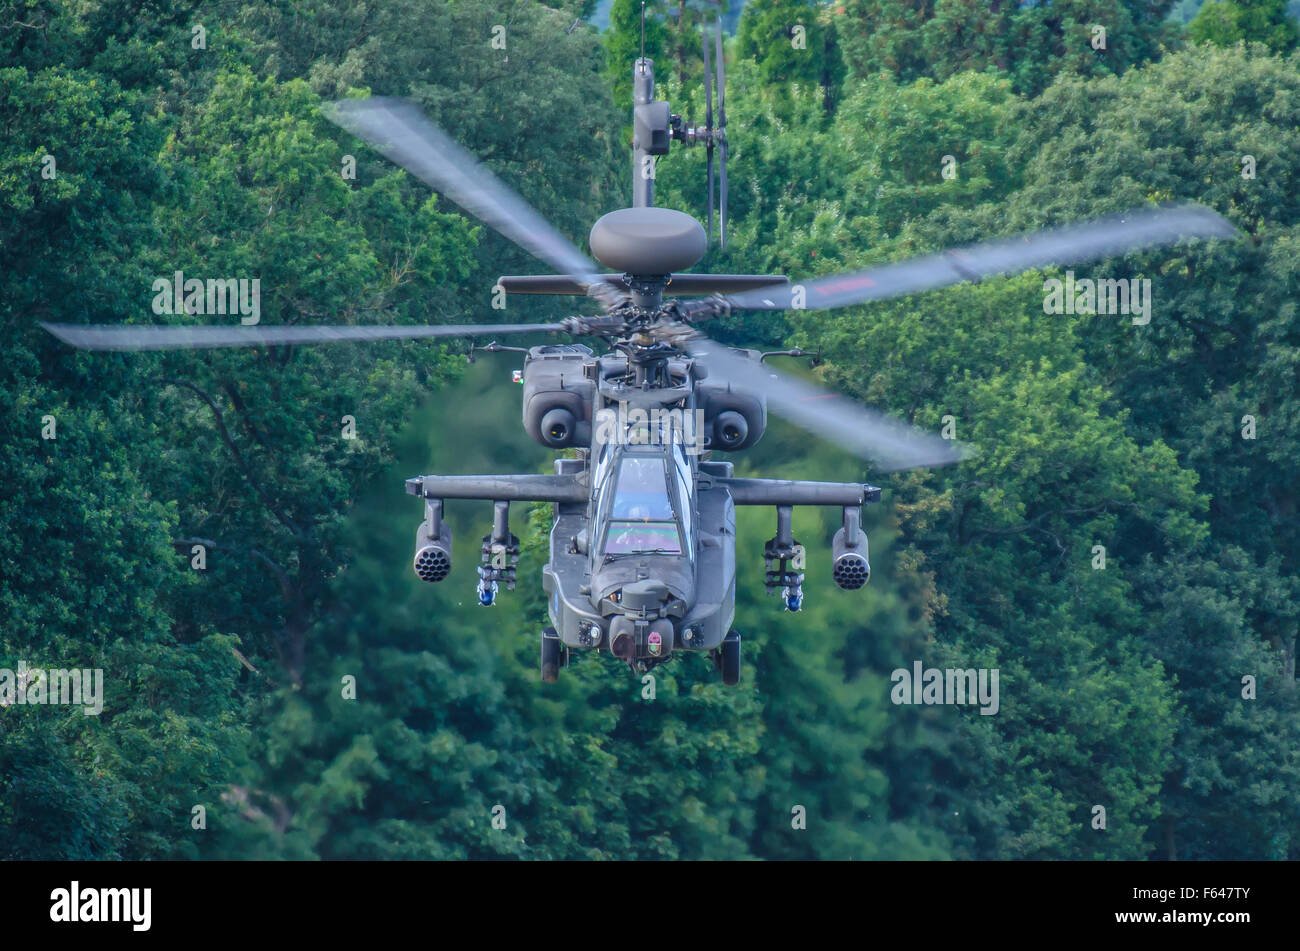 AgustaWestland Apache AH-64D Apache Longbow attaque hélicoptère de l'armée britannique, volant au-dessus d'arbres. Bas. Tueur de chars militaires Banque D'Images